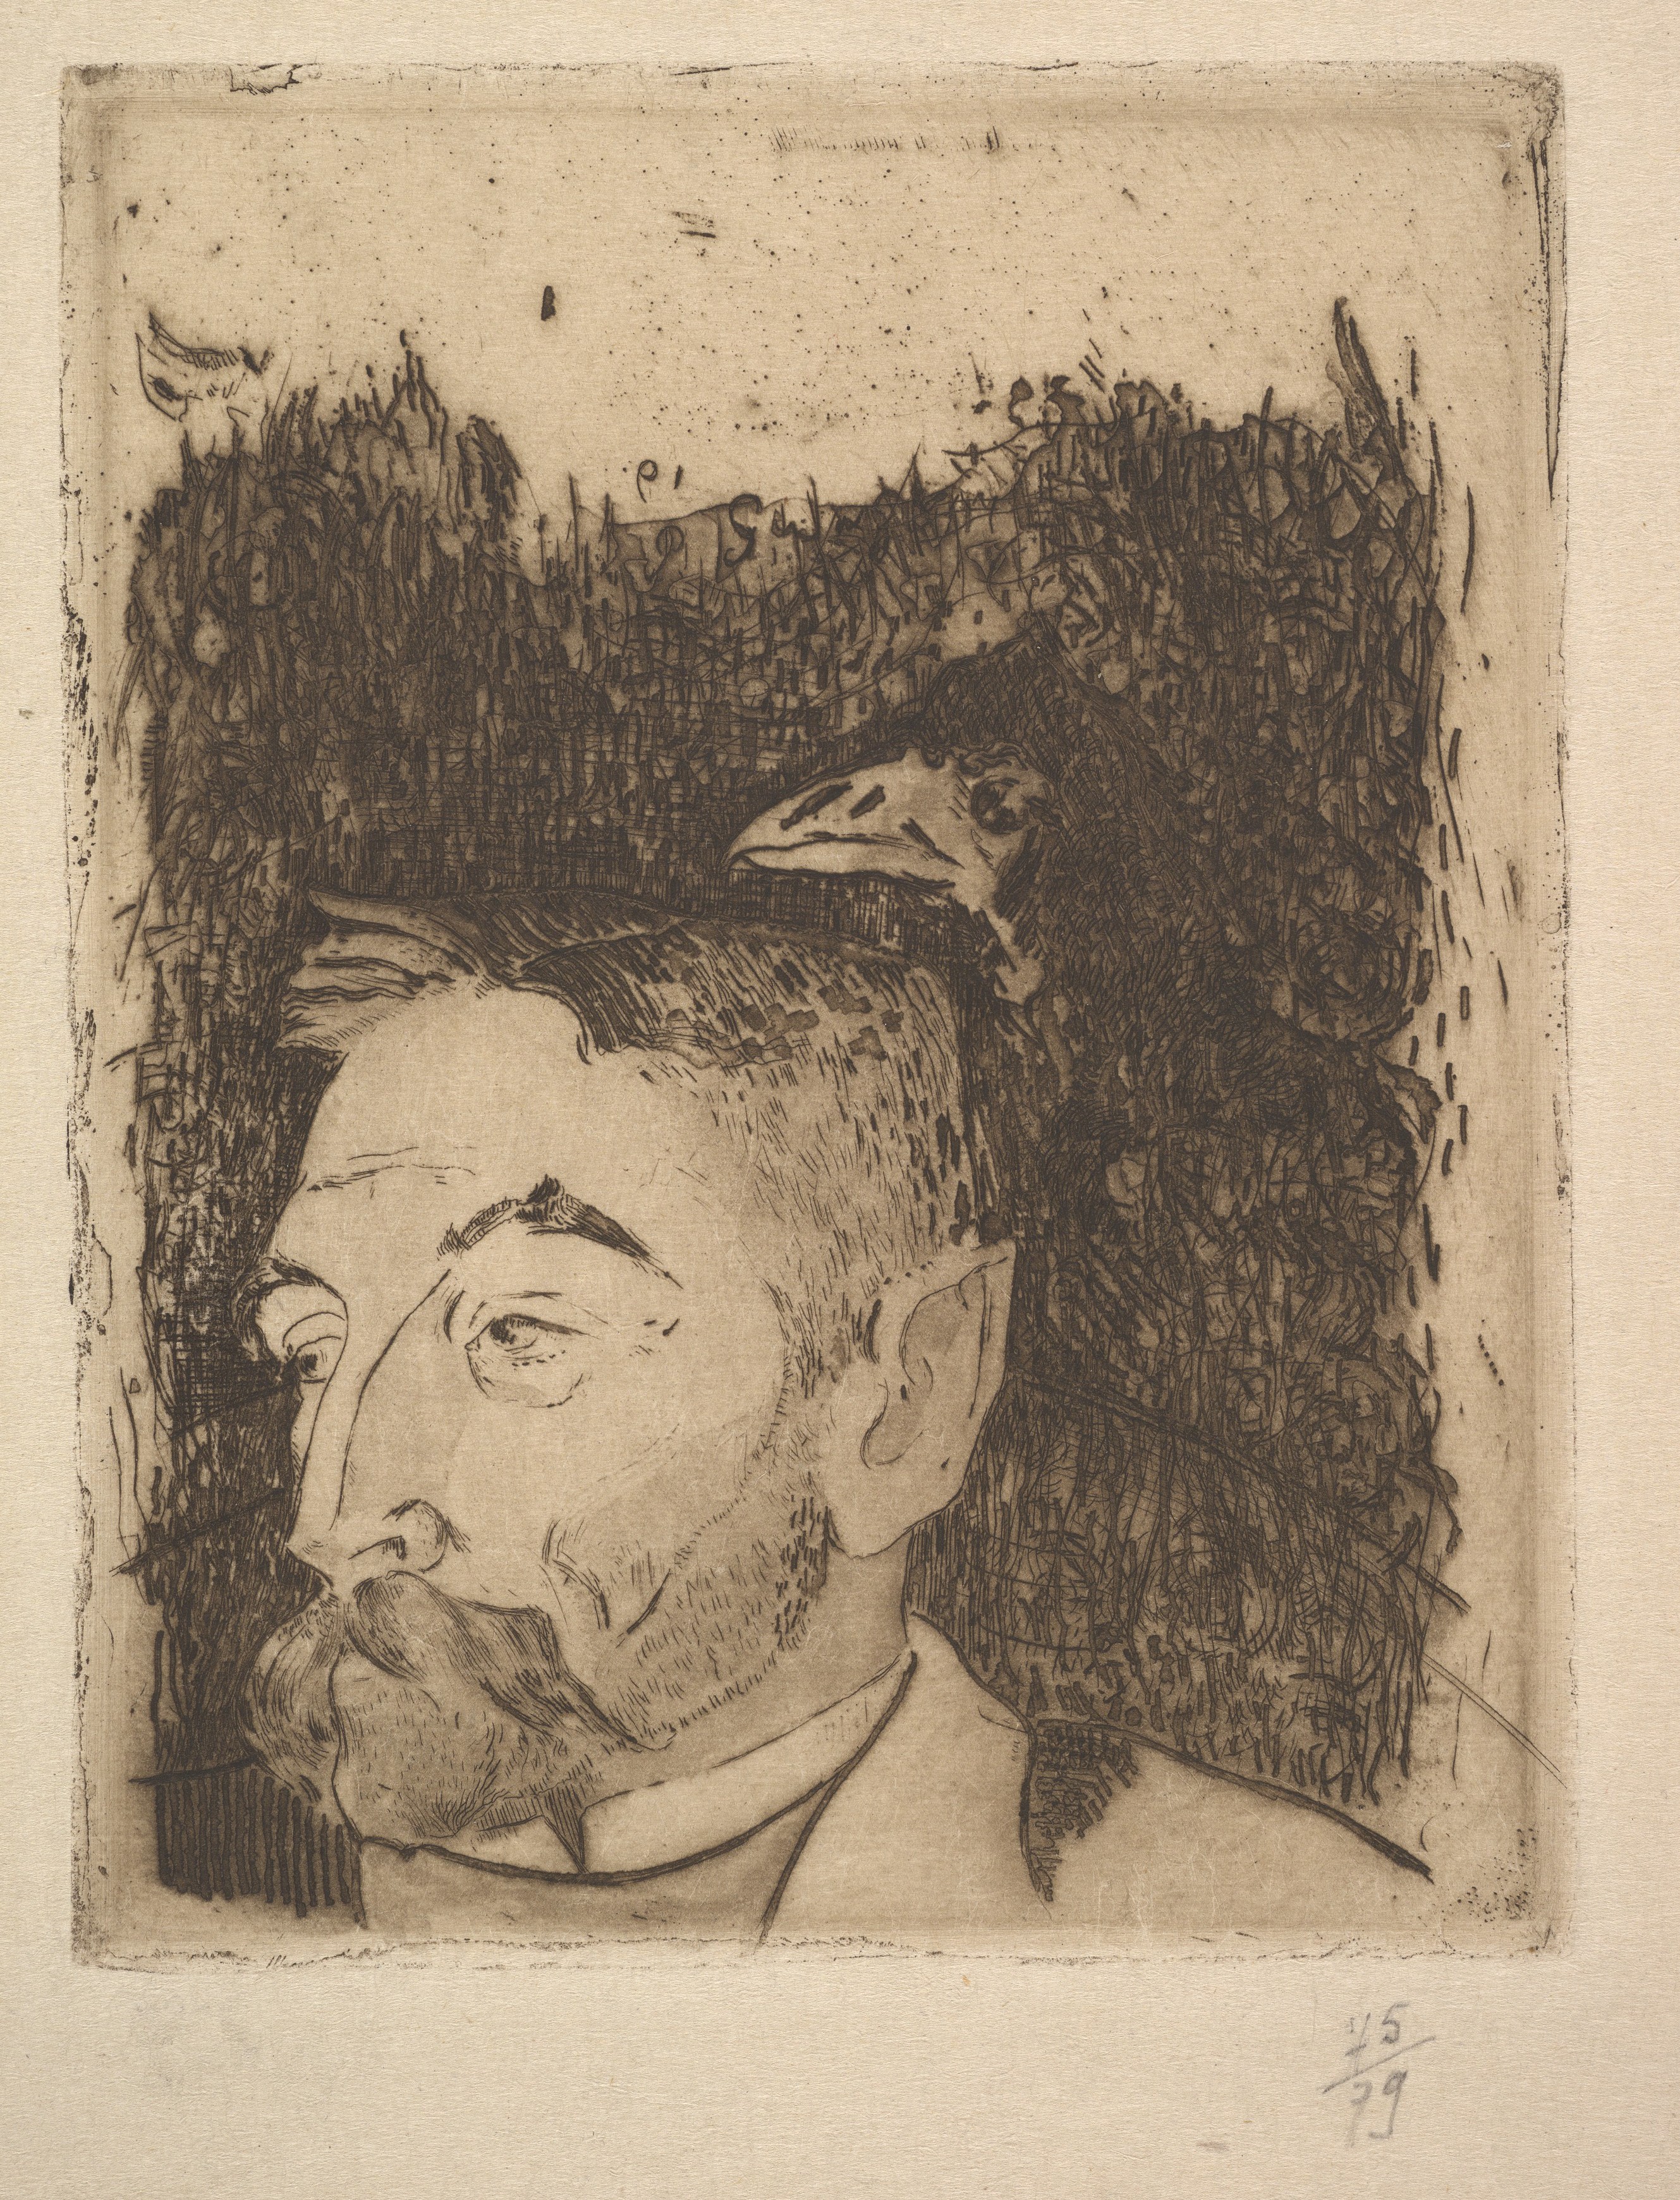 Paul Gauguin Artworks collected in Metmuseum